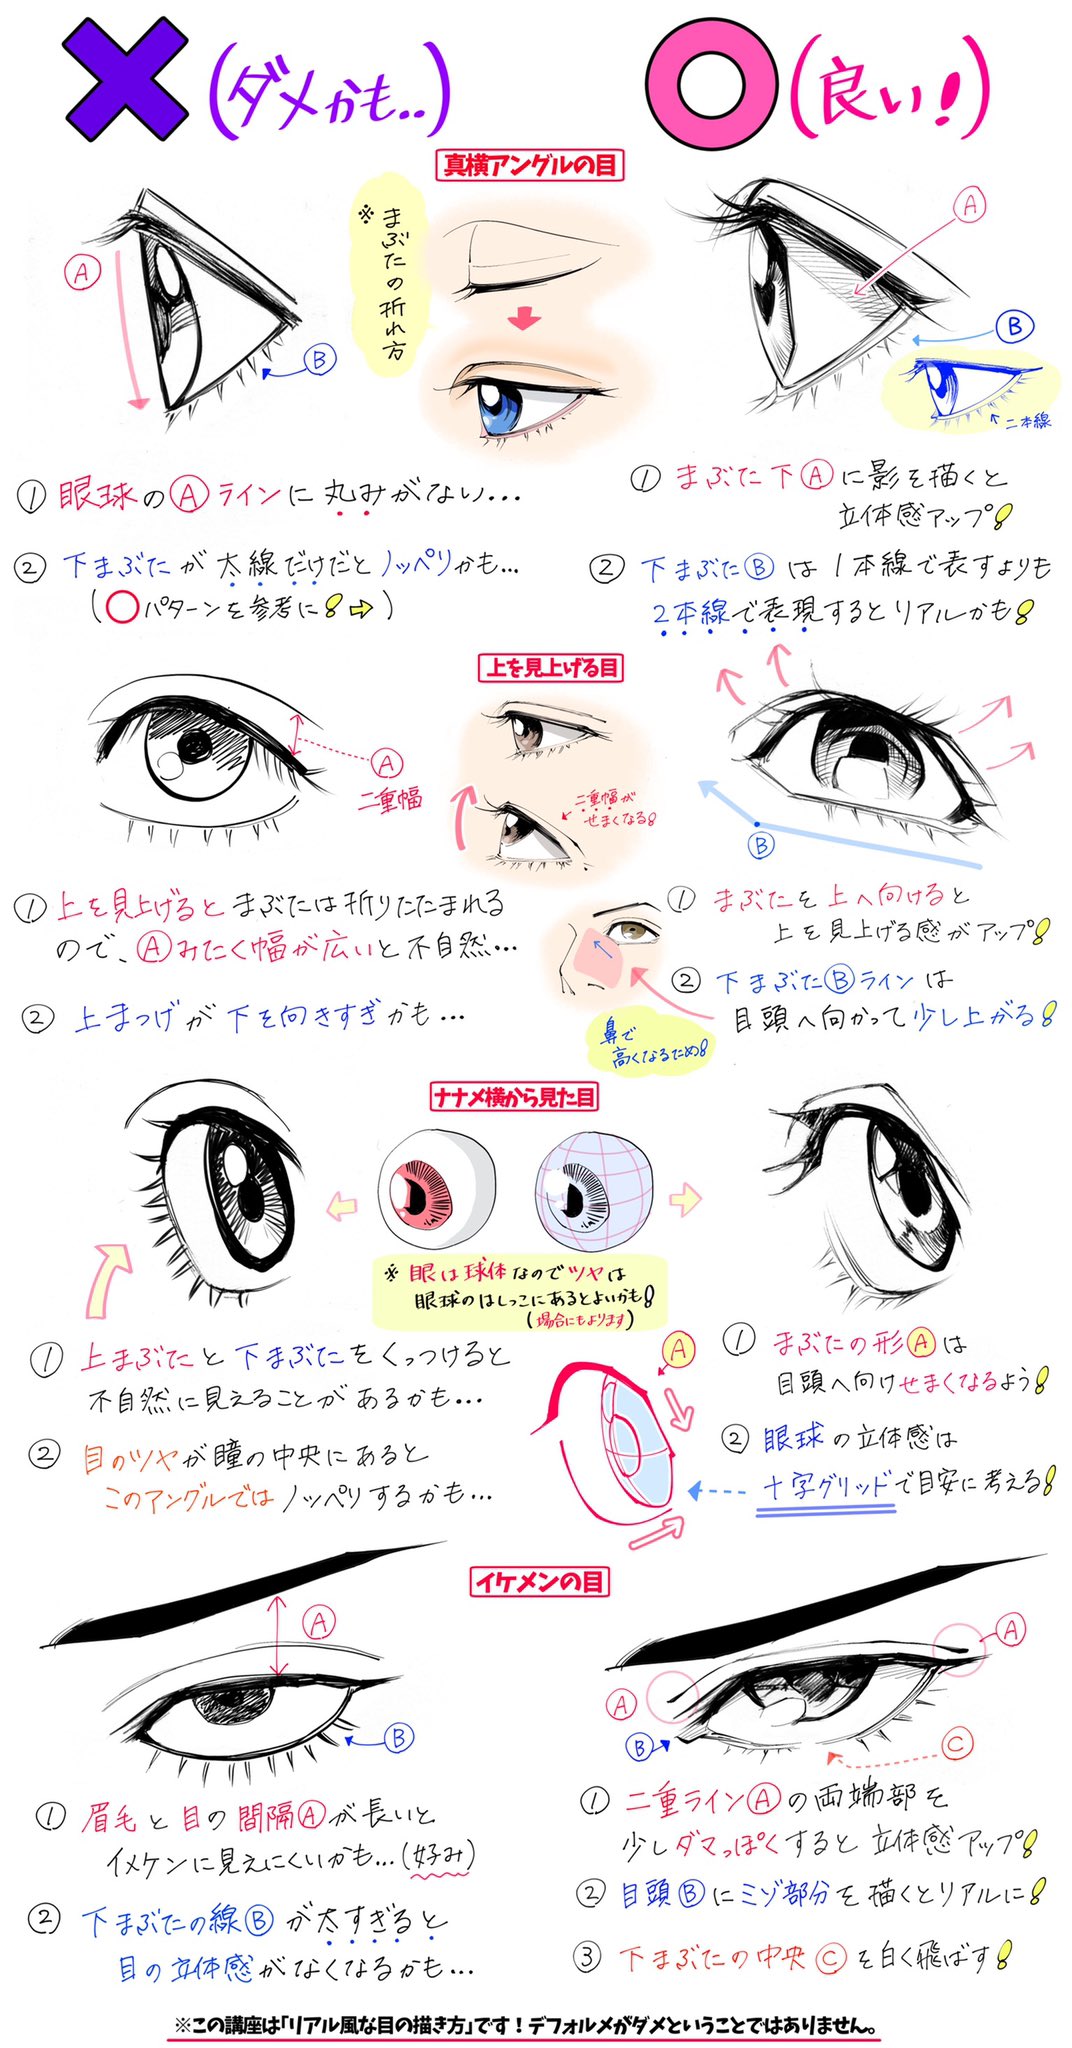 吉村拓也 イラスト講座 瞳の描き方 Amp ペン入れ方法 綺麗な目の線画 が上達するための ダメかも と 良いかも T Co Bv5hhpcr0x Twitter